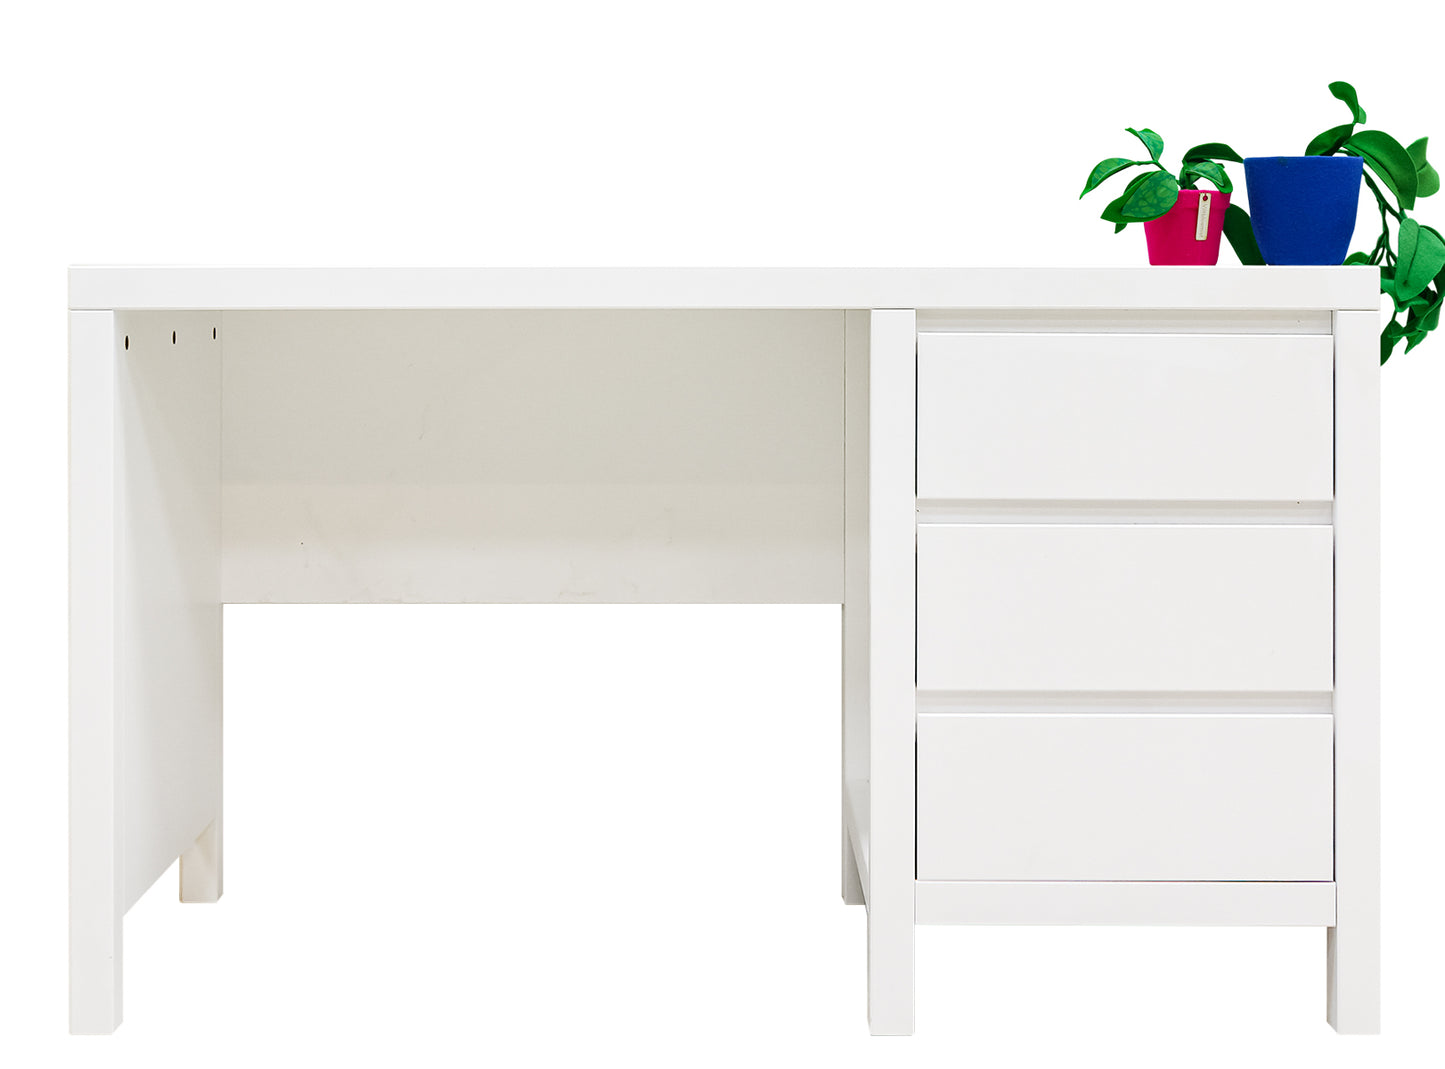 Bopita Corsica desk - White